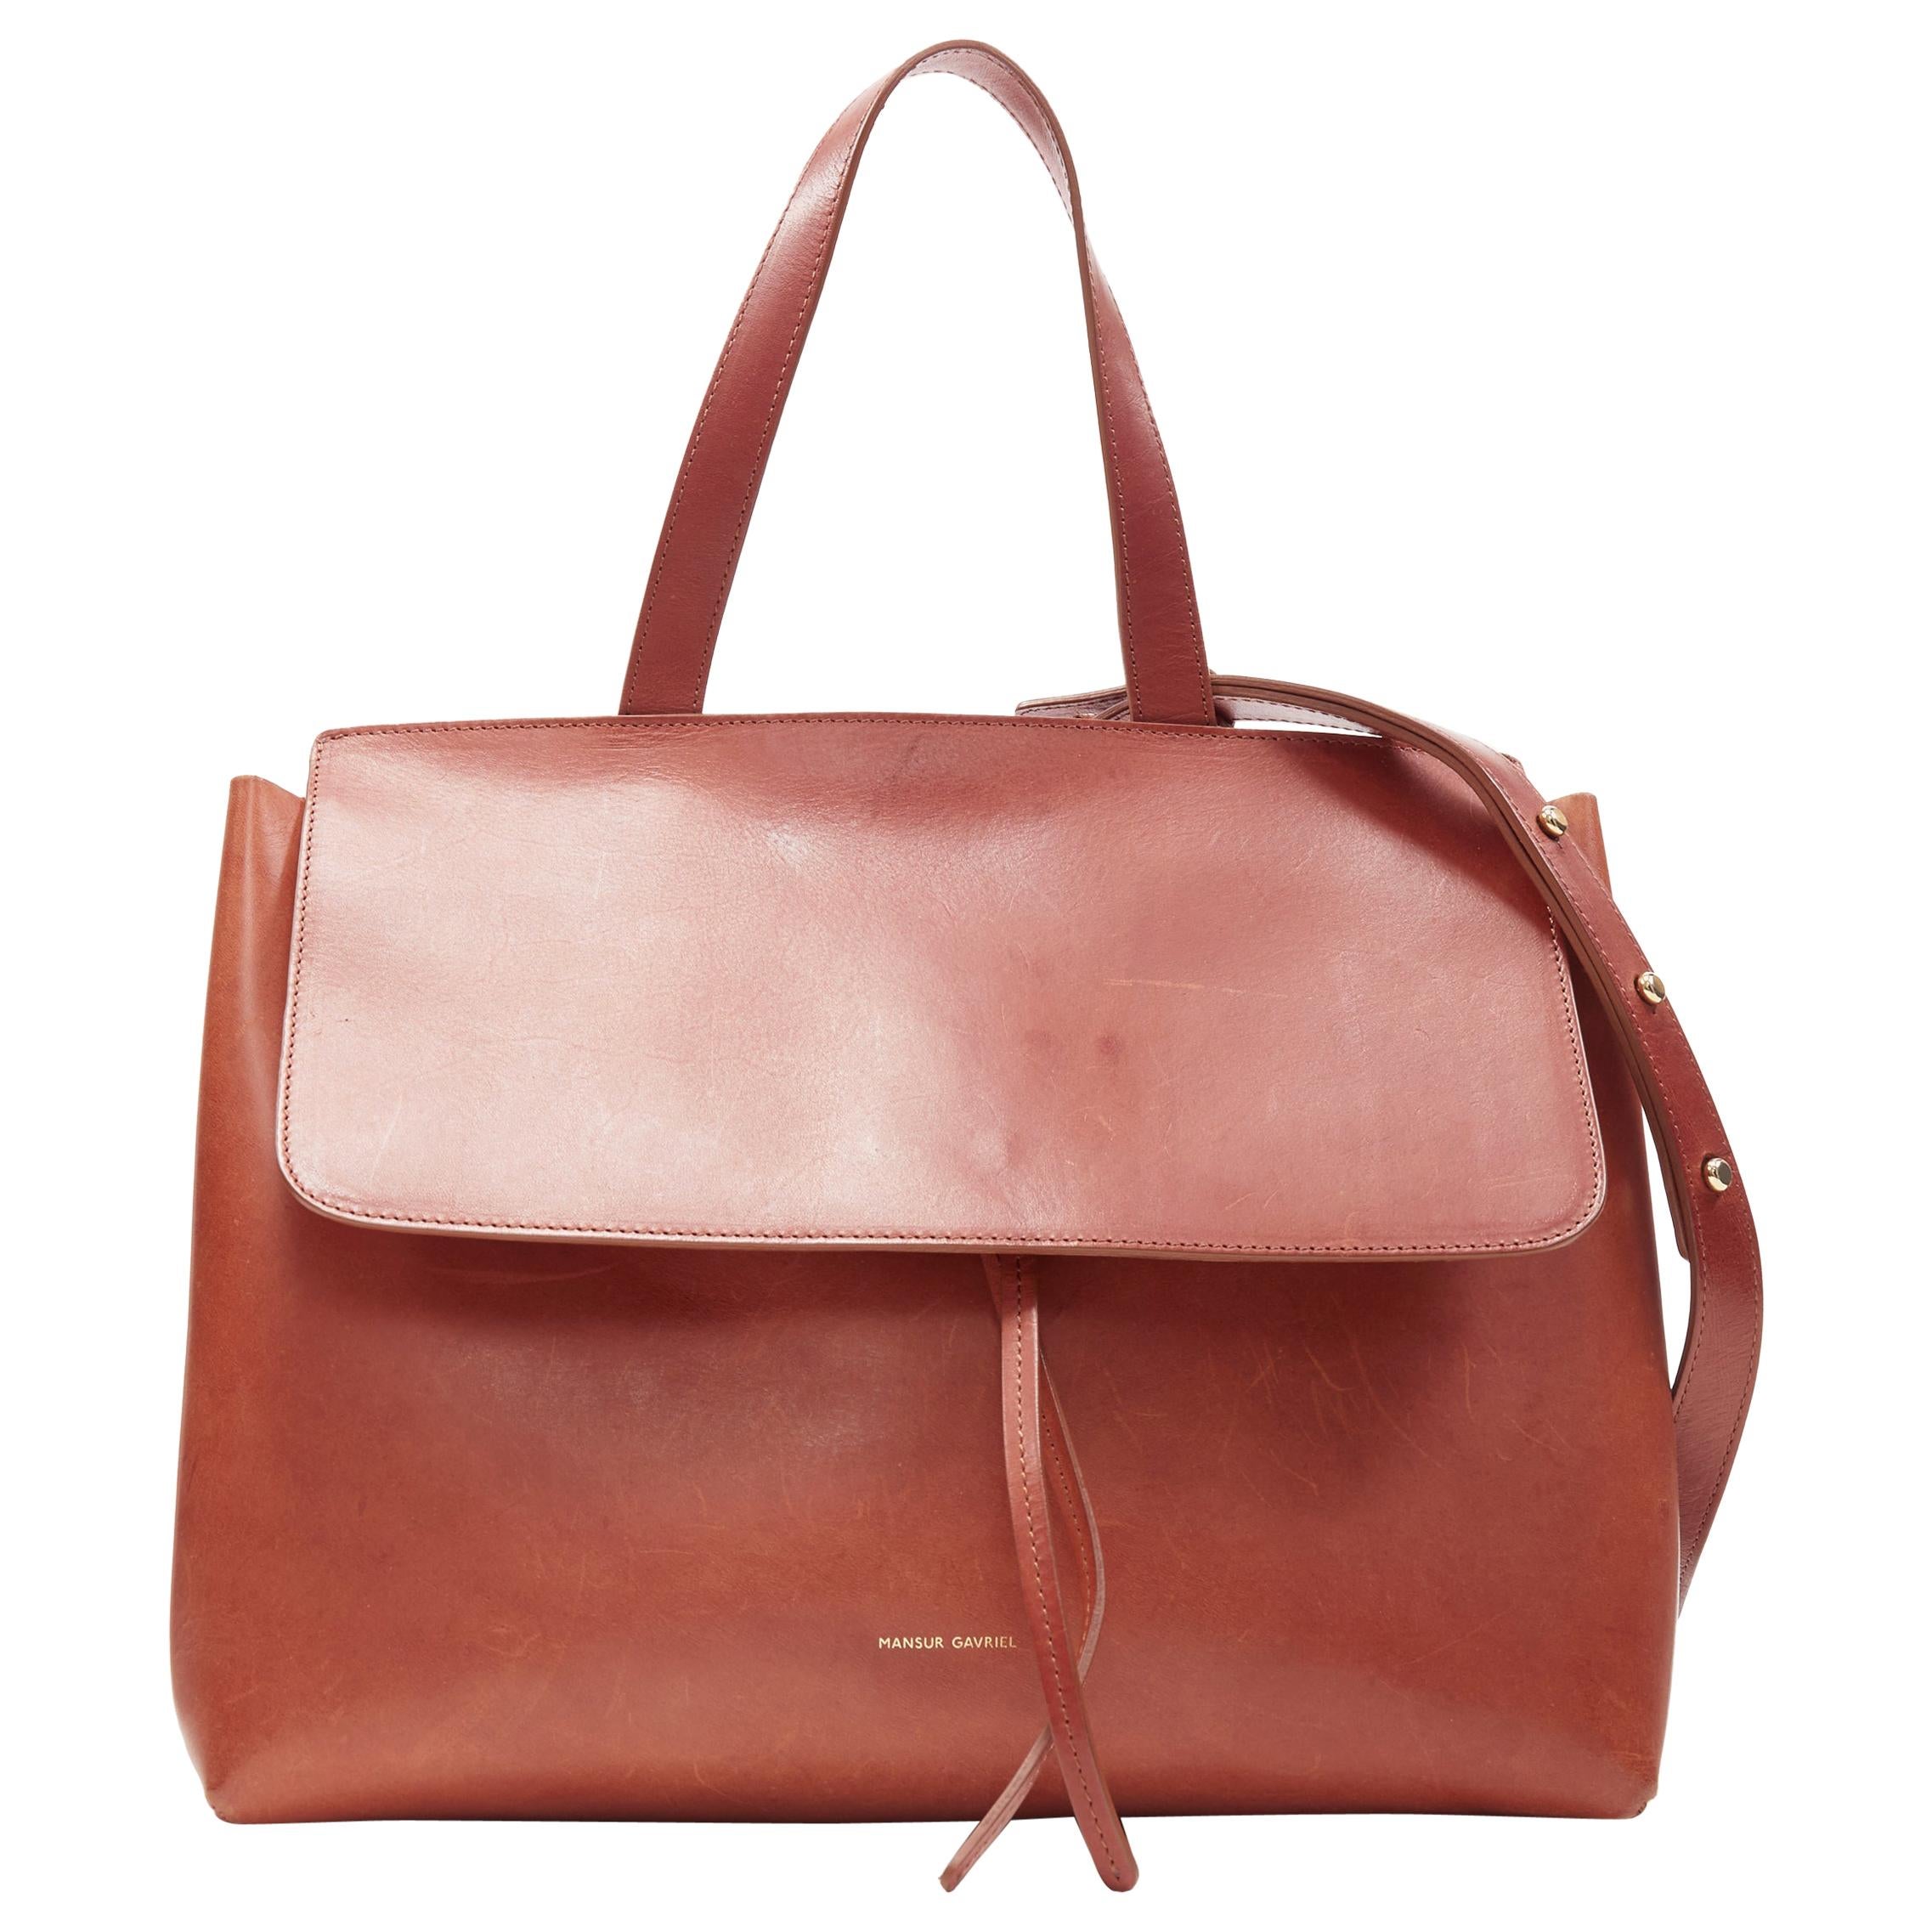 MANSUR GAVRIEL Lady cognac brown smooth leather flap shoulder satchel bag